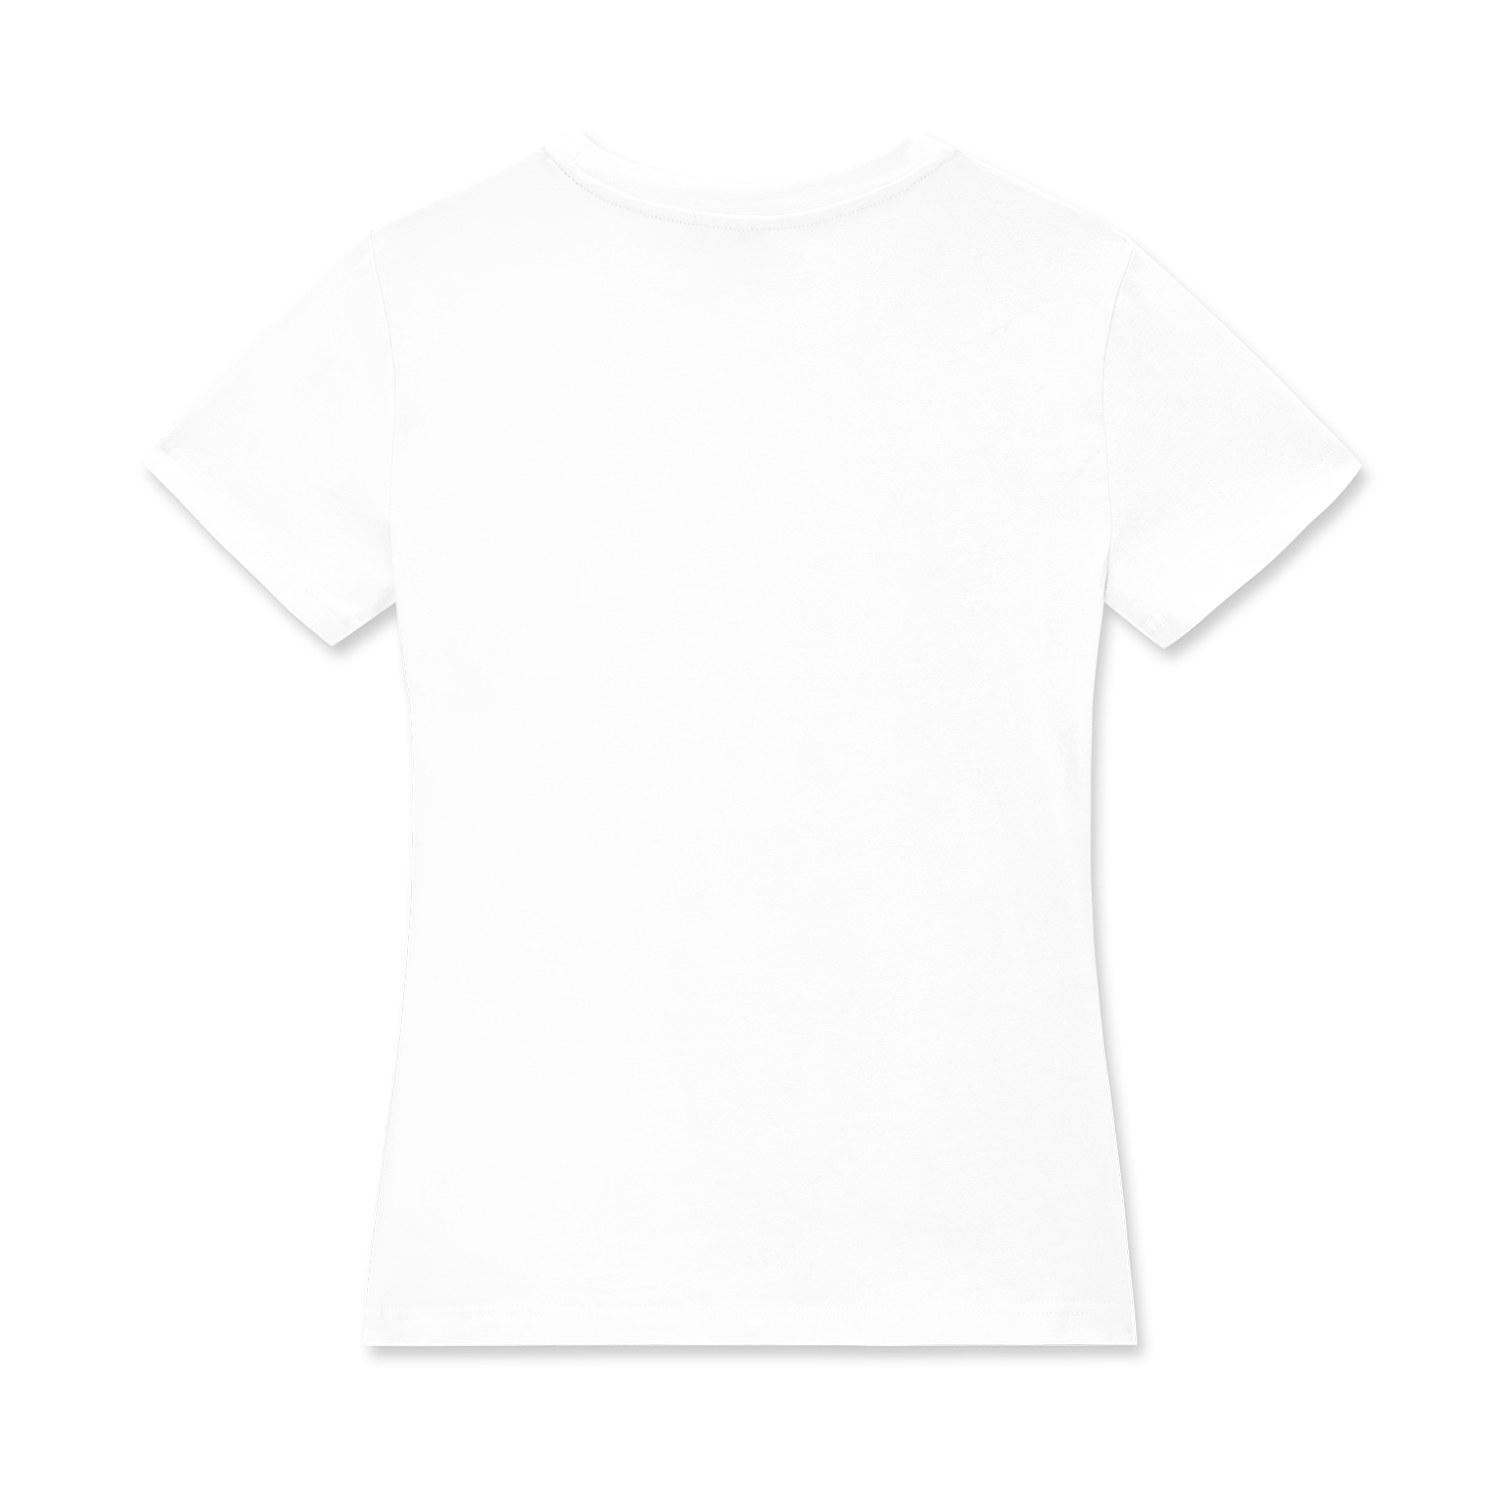 Customizable All-Over Print Women's Crew Neck T-Shirt - Print On Demand | HugePOD-3